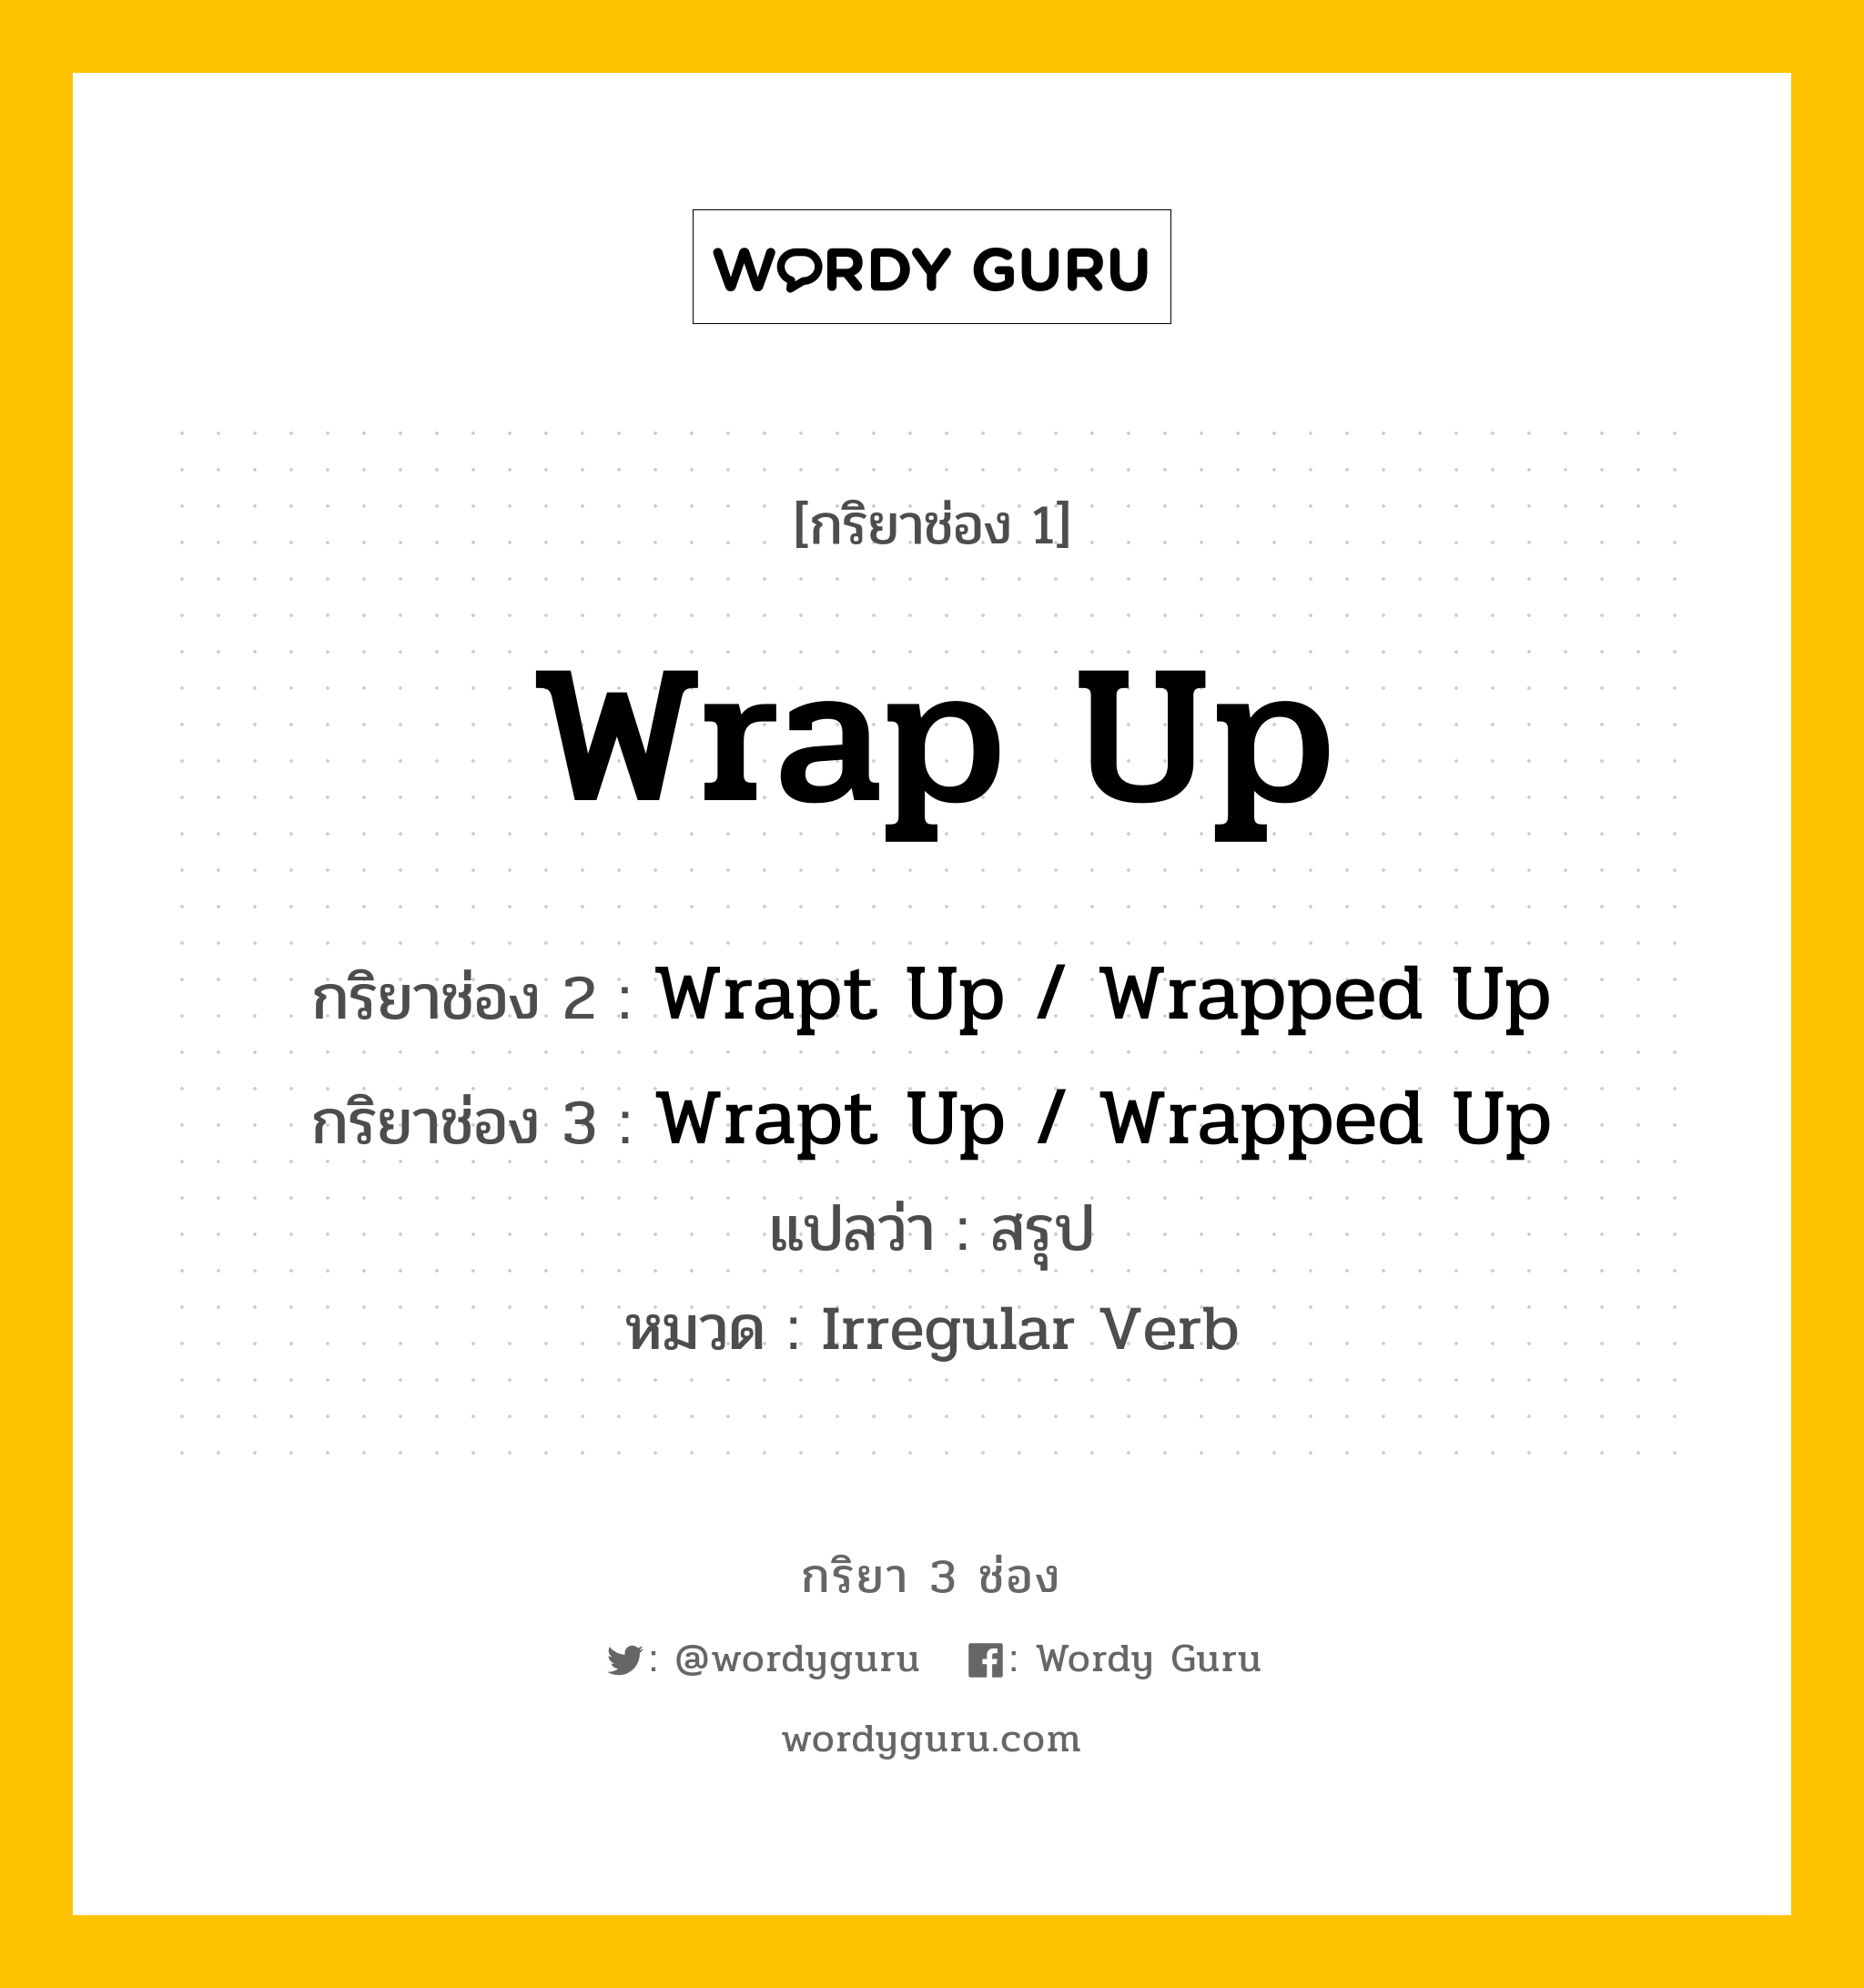 กริยา 3 ช่อง: Wrap Up ช่อง 2 Wrap Up ช่อง 3 คืออะไร, กริยาช่อง 1 Wrap Up กริยาช่อง 2 Wrapt Up / Wrapped Up กริยาช่อง 3 Wrapt Up / Wrapped Up แปลว่า สรุป หมวด Irregular Verb หมวด Irregular Verb